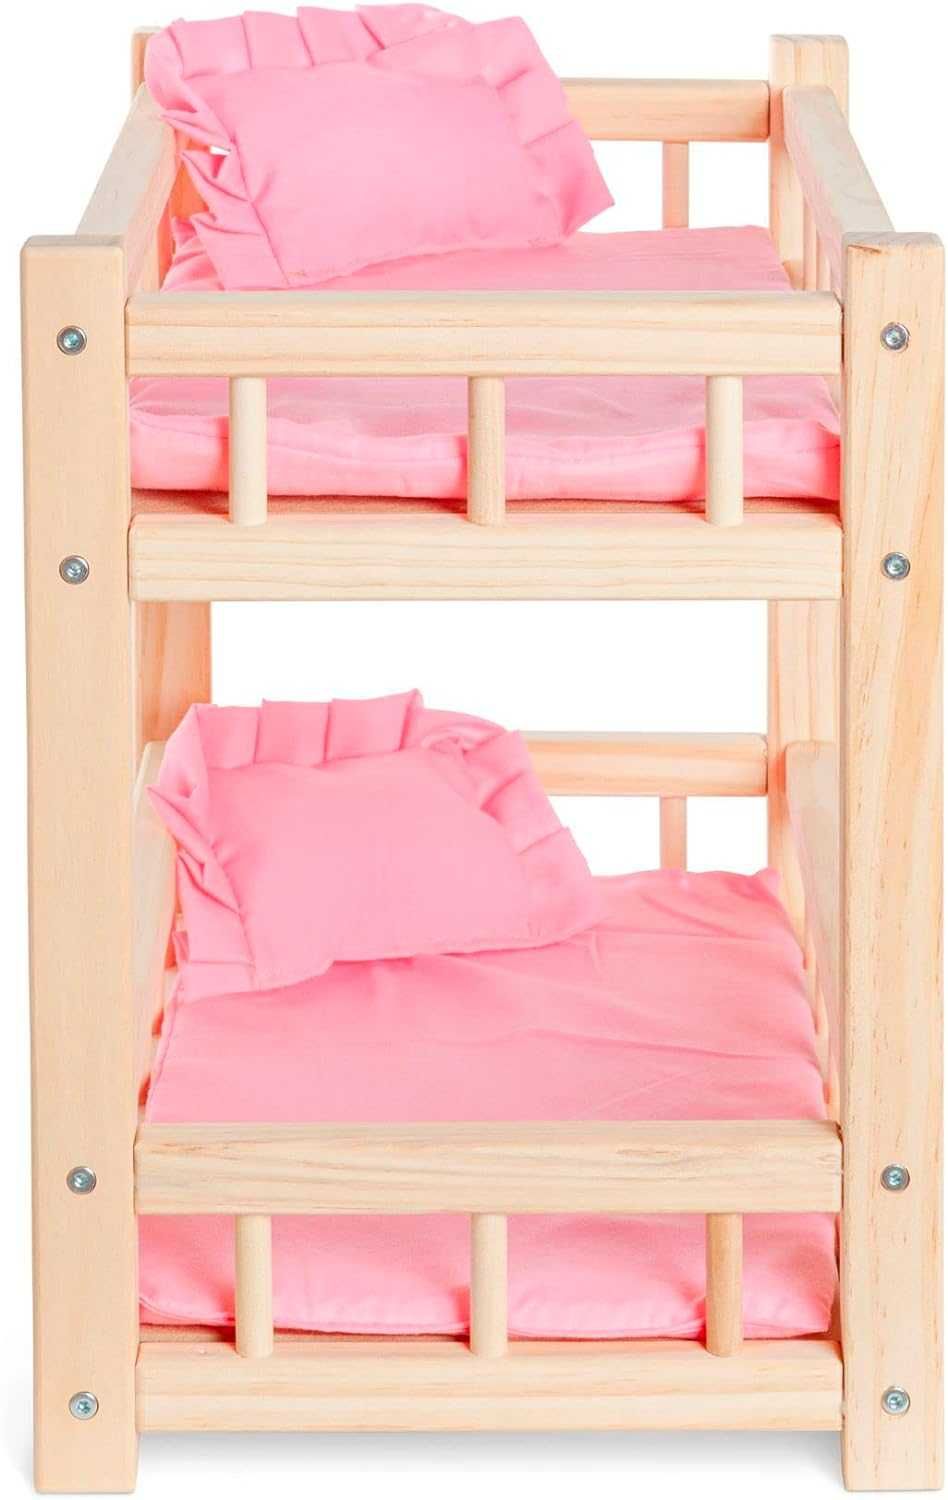 Drewniane łóżko piętrowe dla lalek do 14 cali Wooden